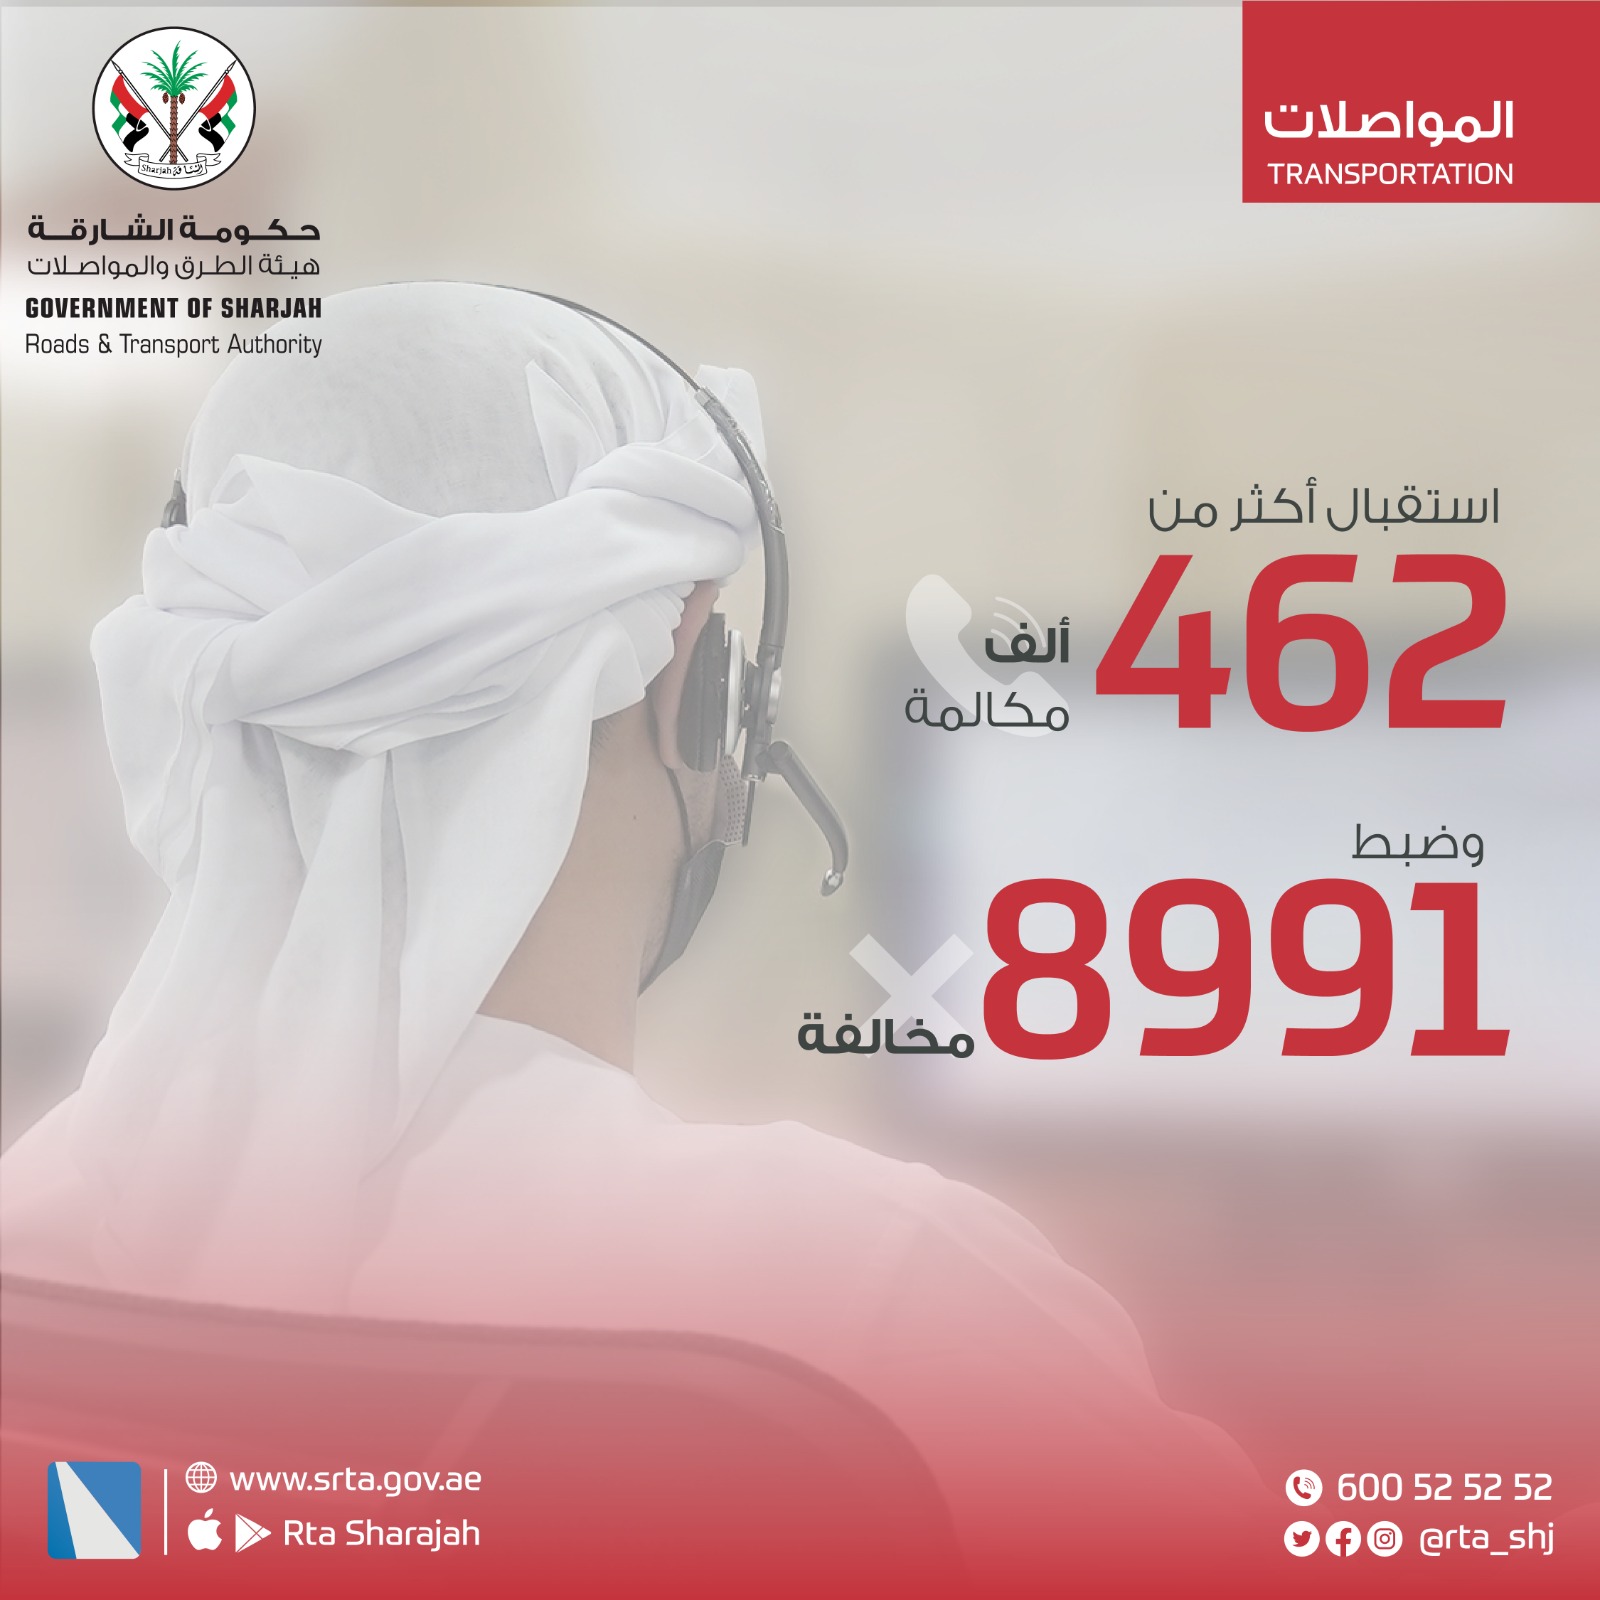 هيئة الطرق والمواصلات في الشارقة تتلقى أكثر من 462 ألف مكالمة وضبط 8991 مخالفة